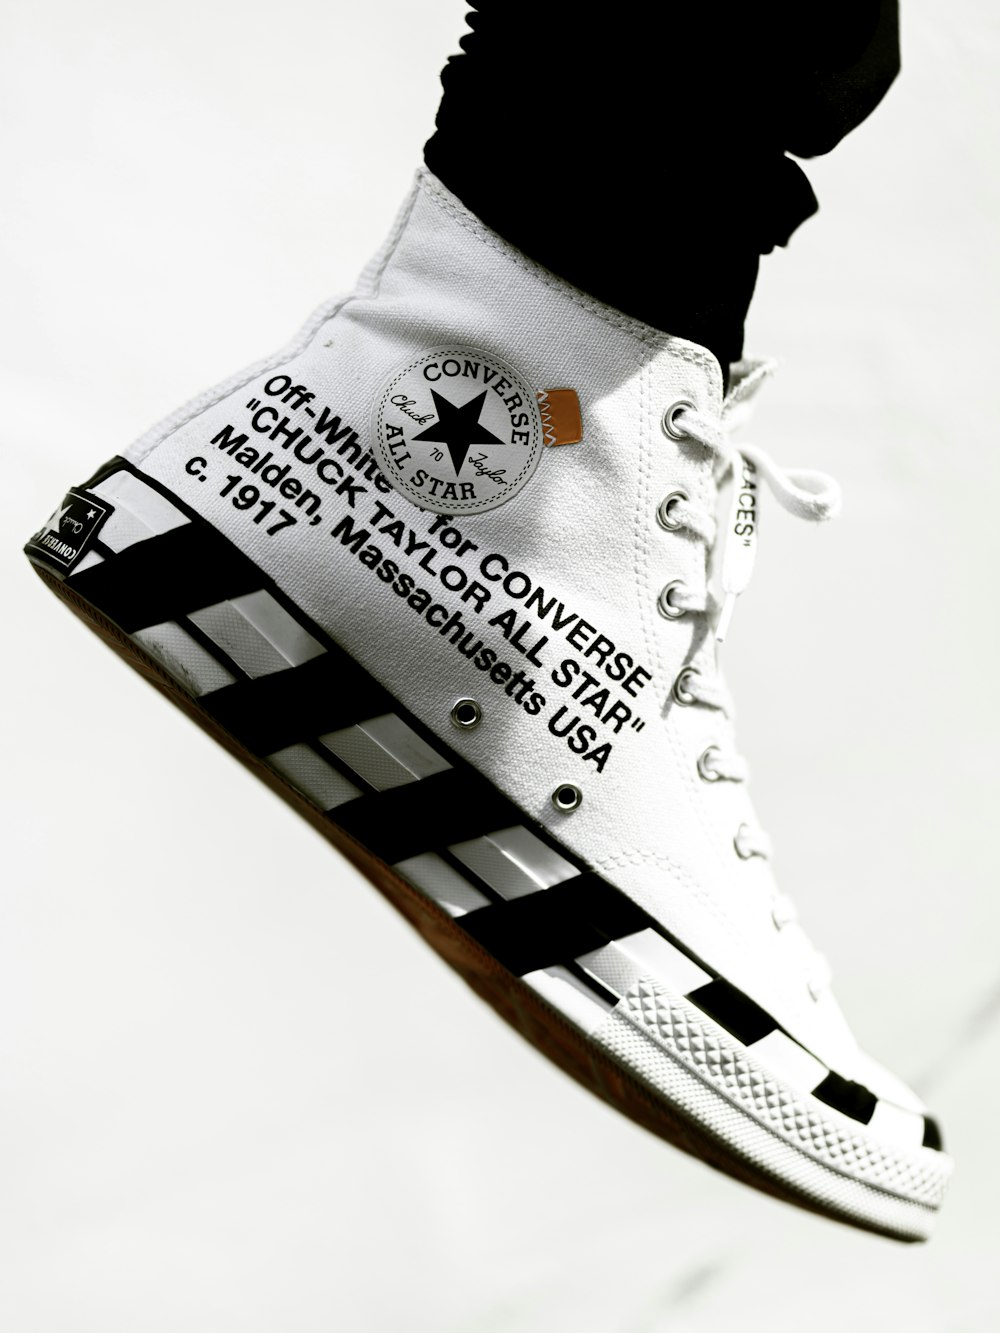 Foto Zapatillas altas blancas y negras converse all star – Imagen  Blanquecino gratis en Unsplash